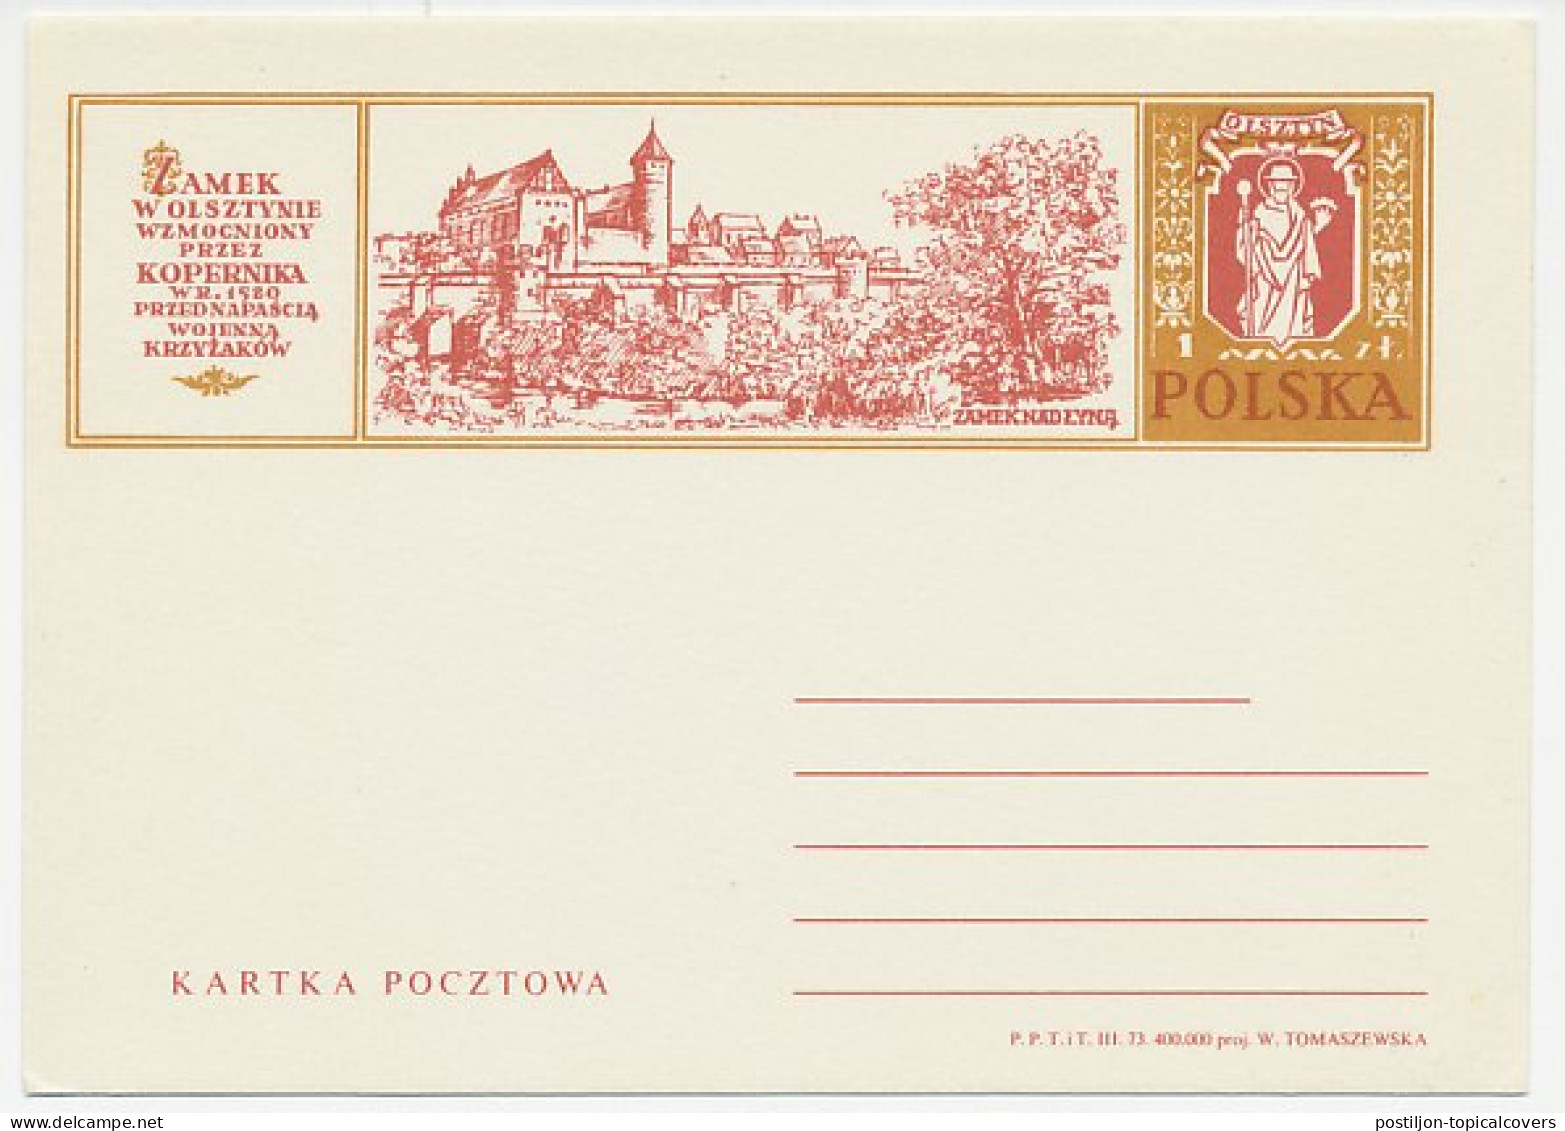 Postal Stationery Poland 1973 Nicolaus Copernicus - Astronomer - Astronomie